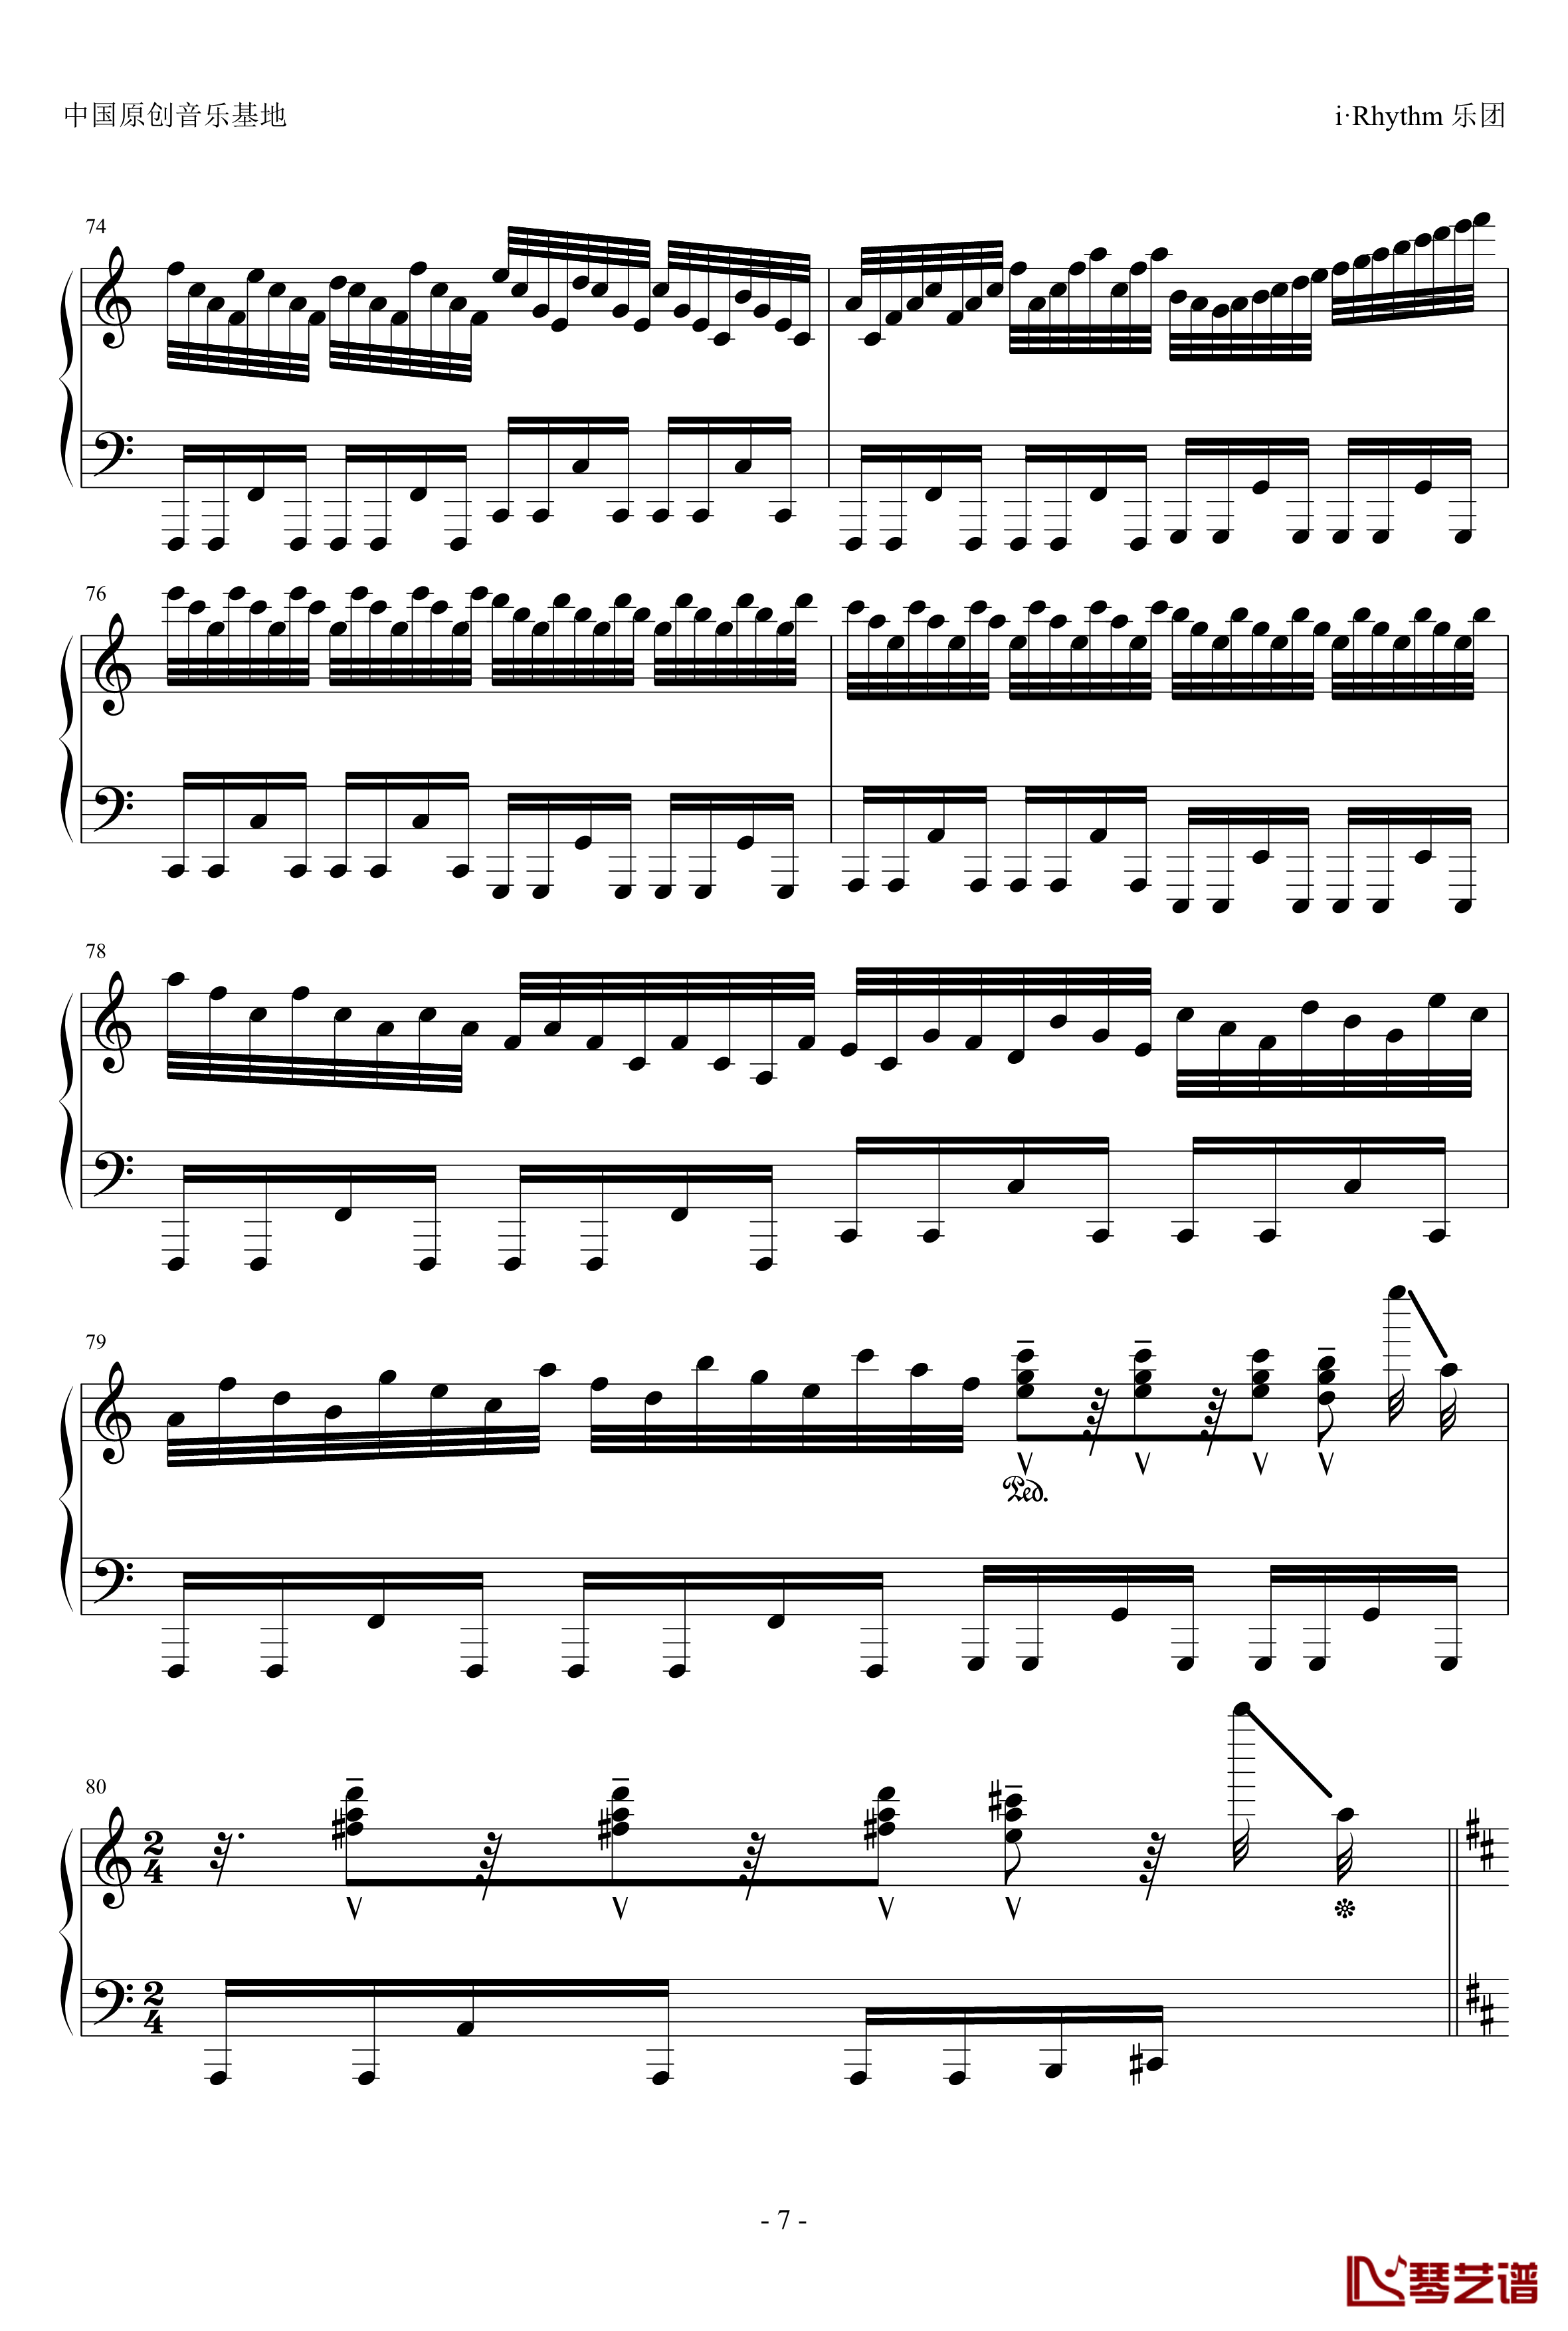 卡农钢琴谱-疯狂版-帕赫贝尔-Pachelbel